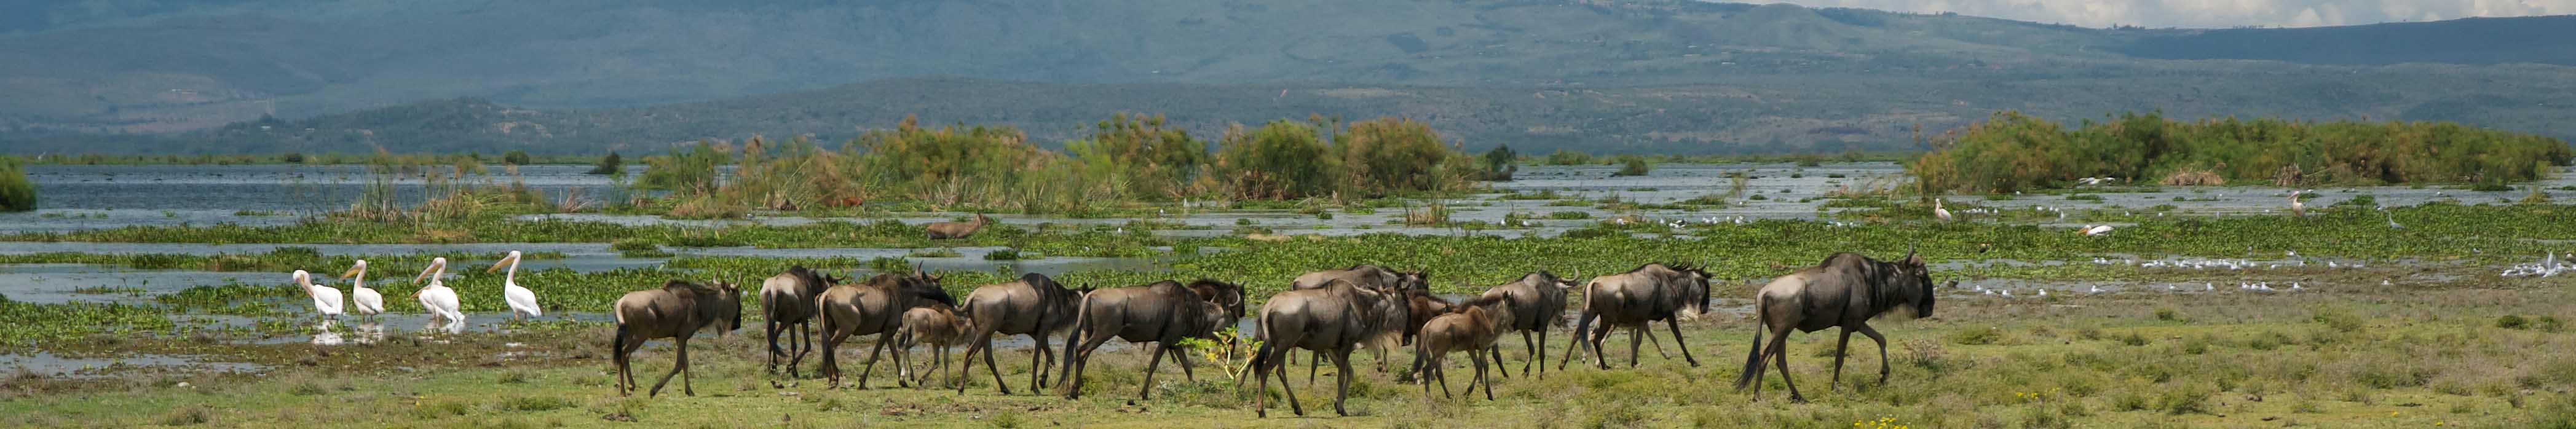 Wildebeest at Lake Naivasha by Transtrek Safaris